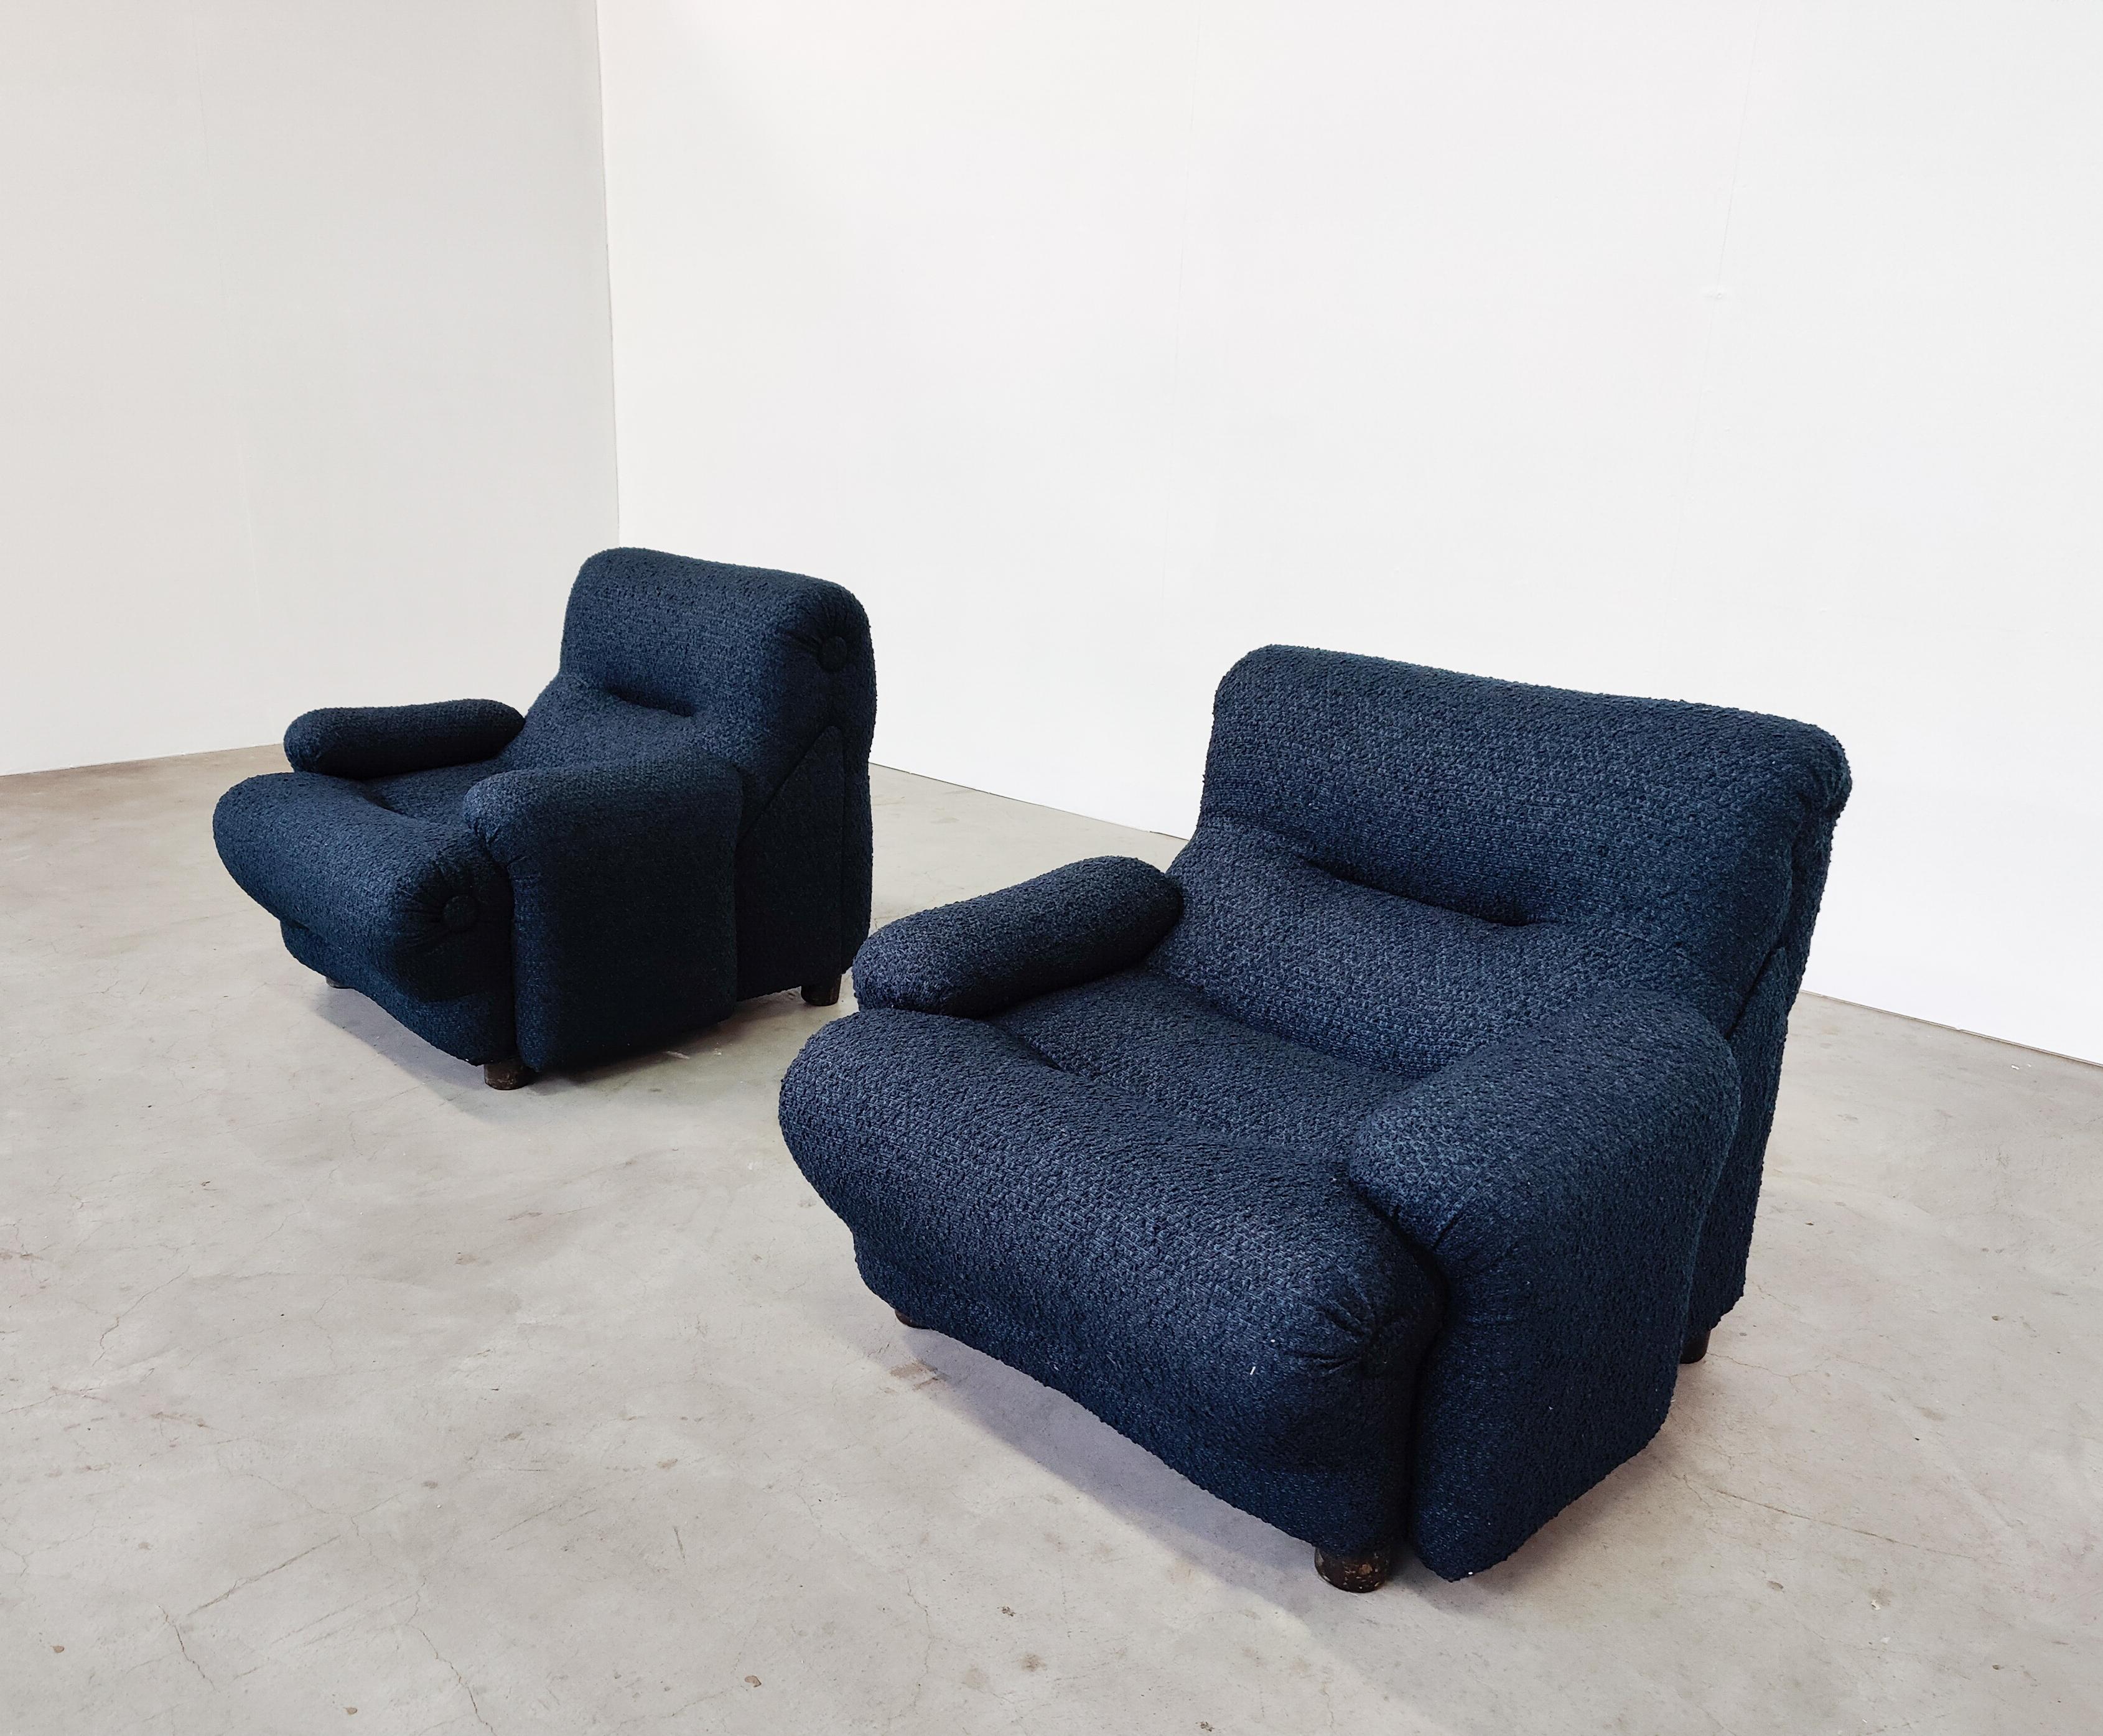 Paire de chaises longues Rezia d'Emilio Guarnacci et Felix Padovano pour 1P, années 1960
Nouvelle tapisserie d'ameublement
Design italien 